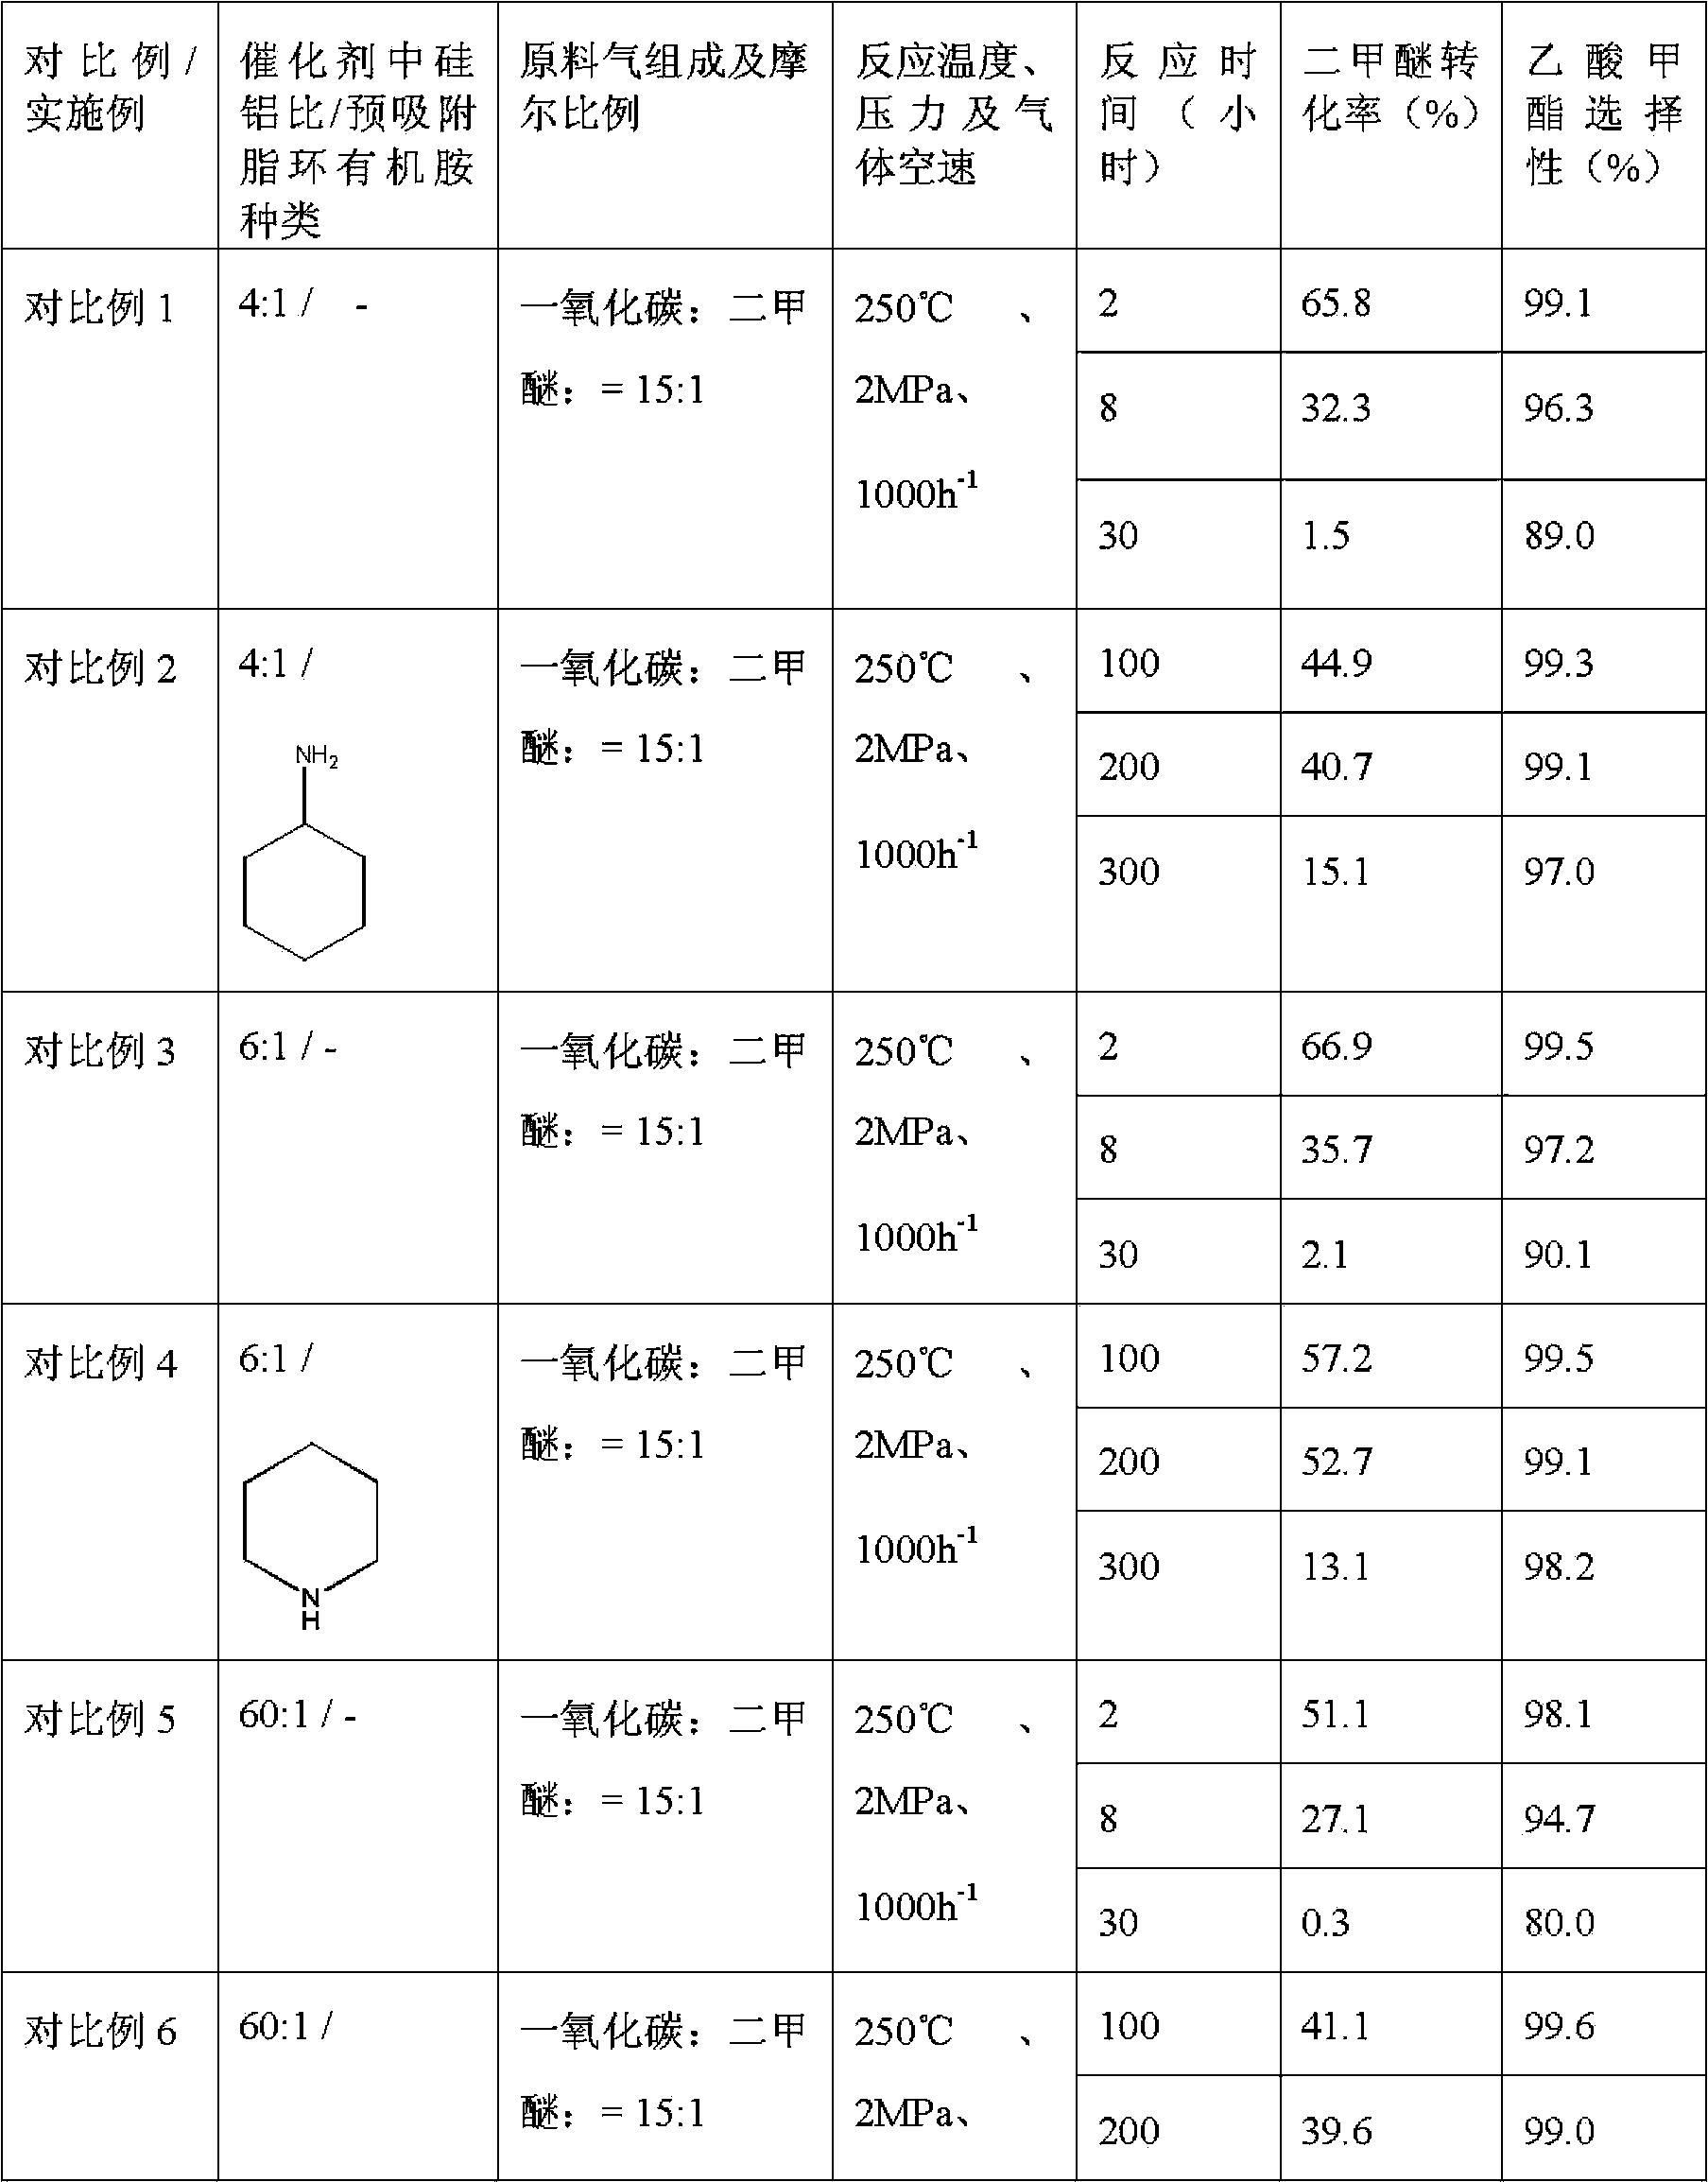 Method used for producing methyl acetate